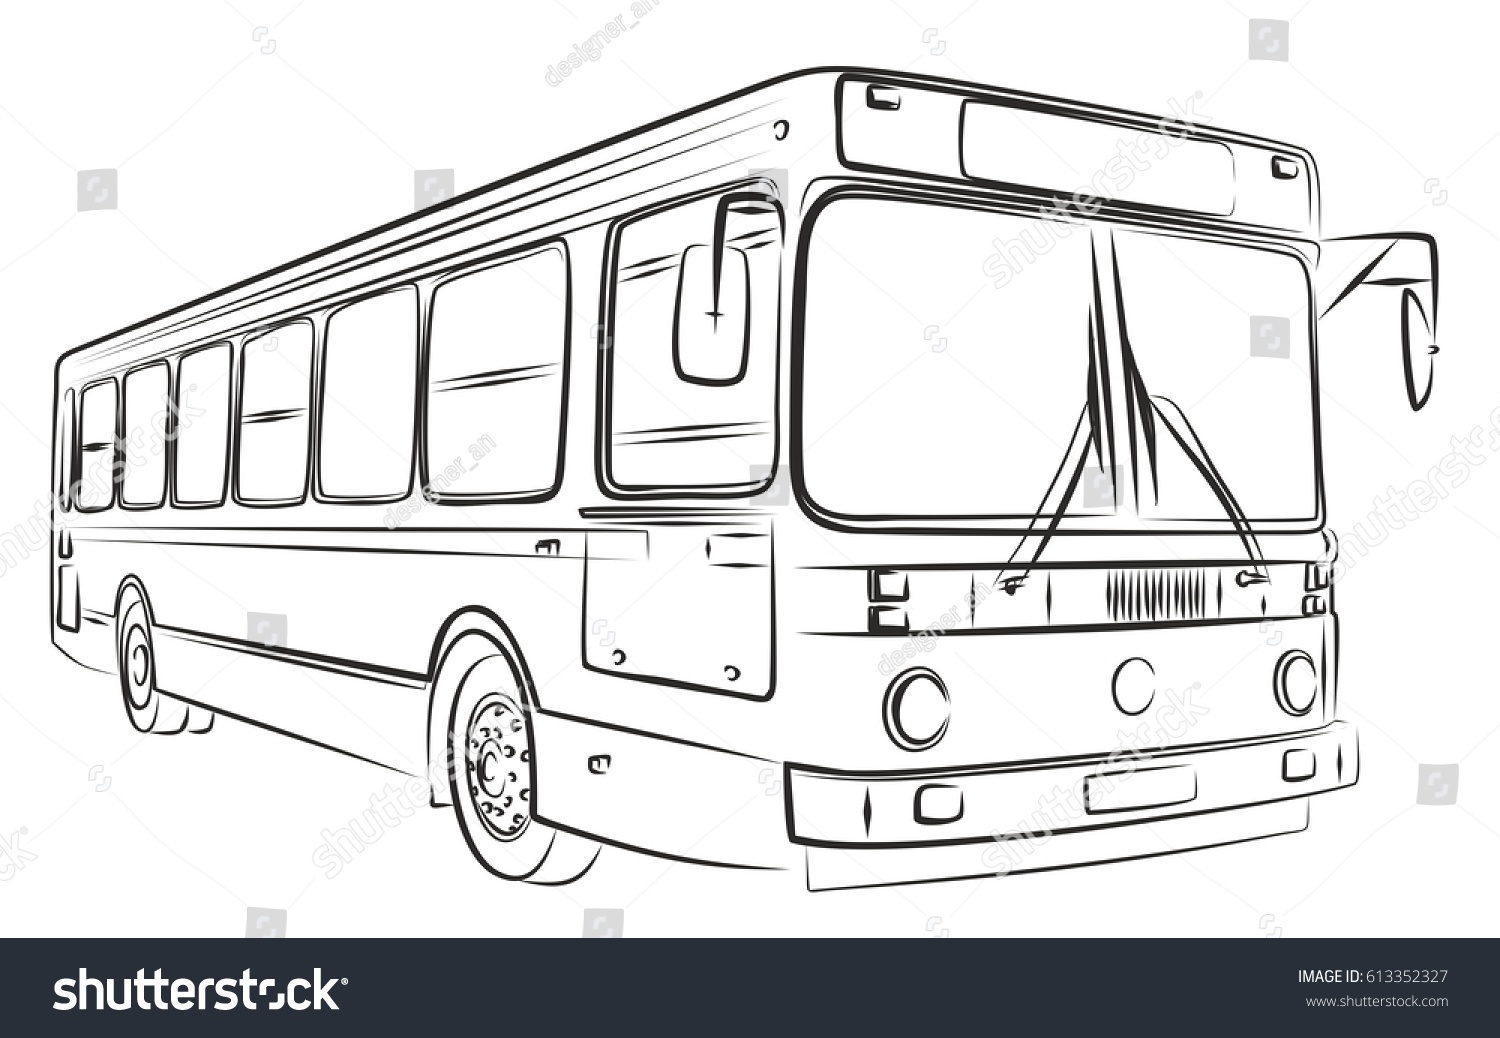 Автобус ЛИАЗ раскраска для детей